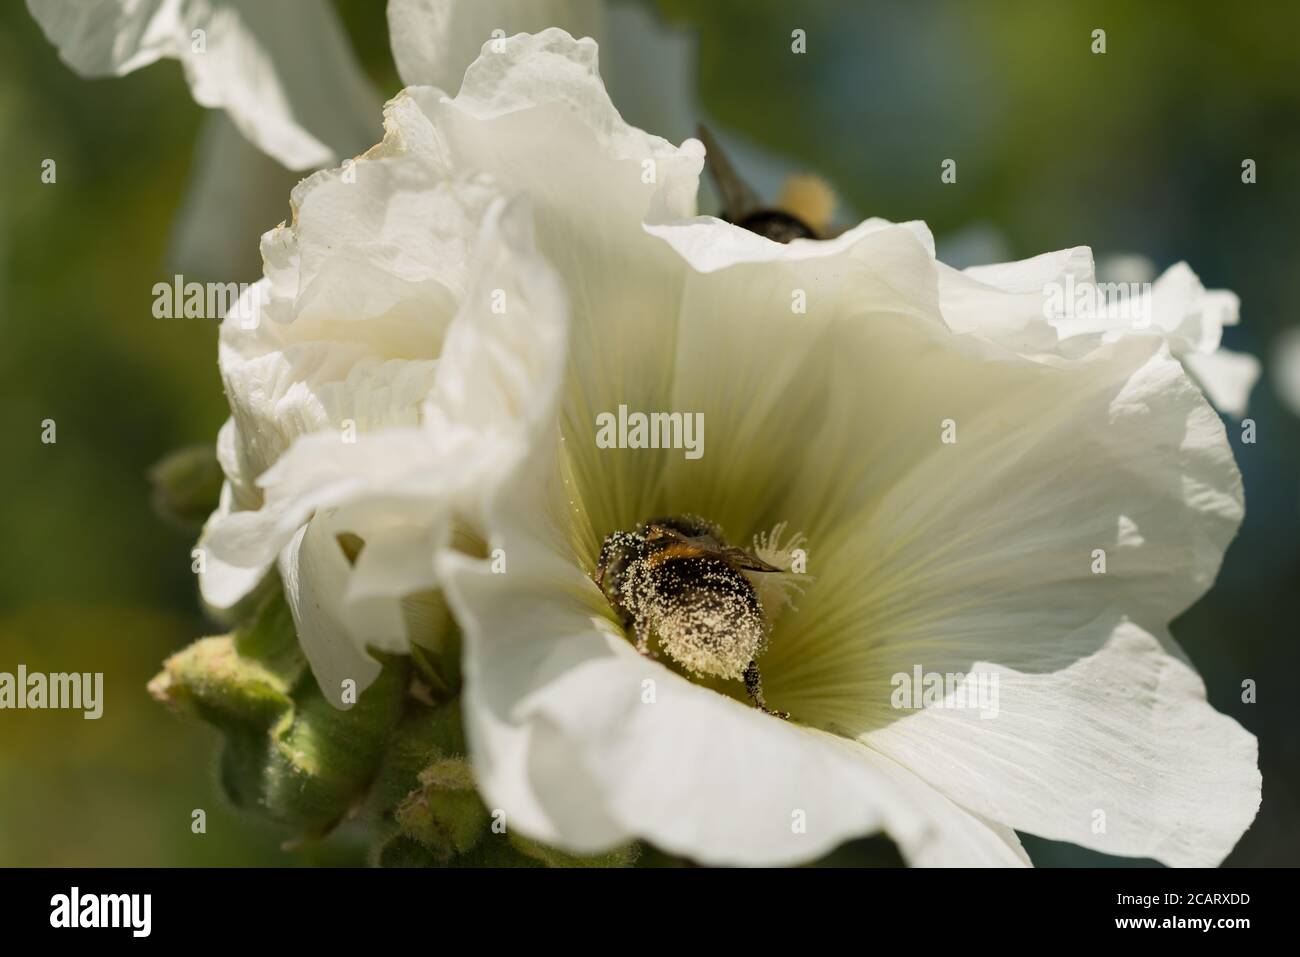 Nourrissant la frénésie sur Alcea rosea Hollyhock que les abeilles bourdes se nourrissent sur le nectar étant complètement couvert dans le pollen facilitant la pollinisation dans été Banque D'Images